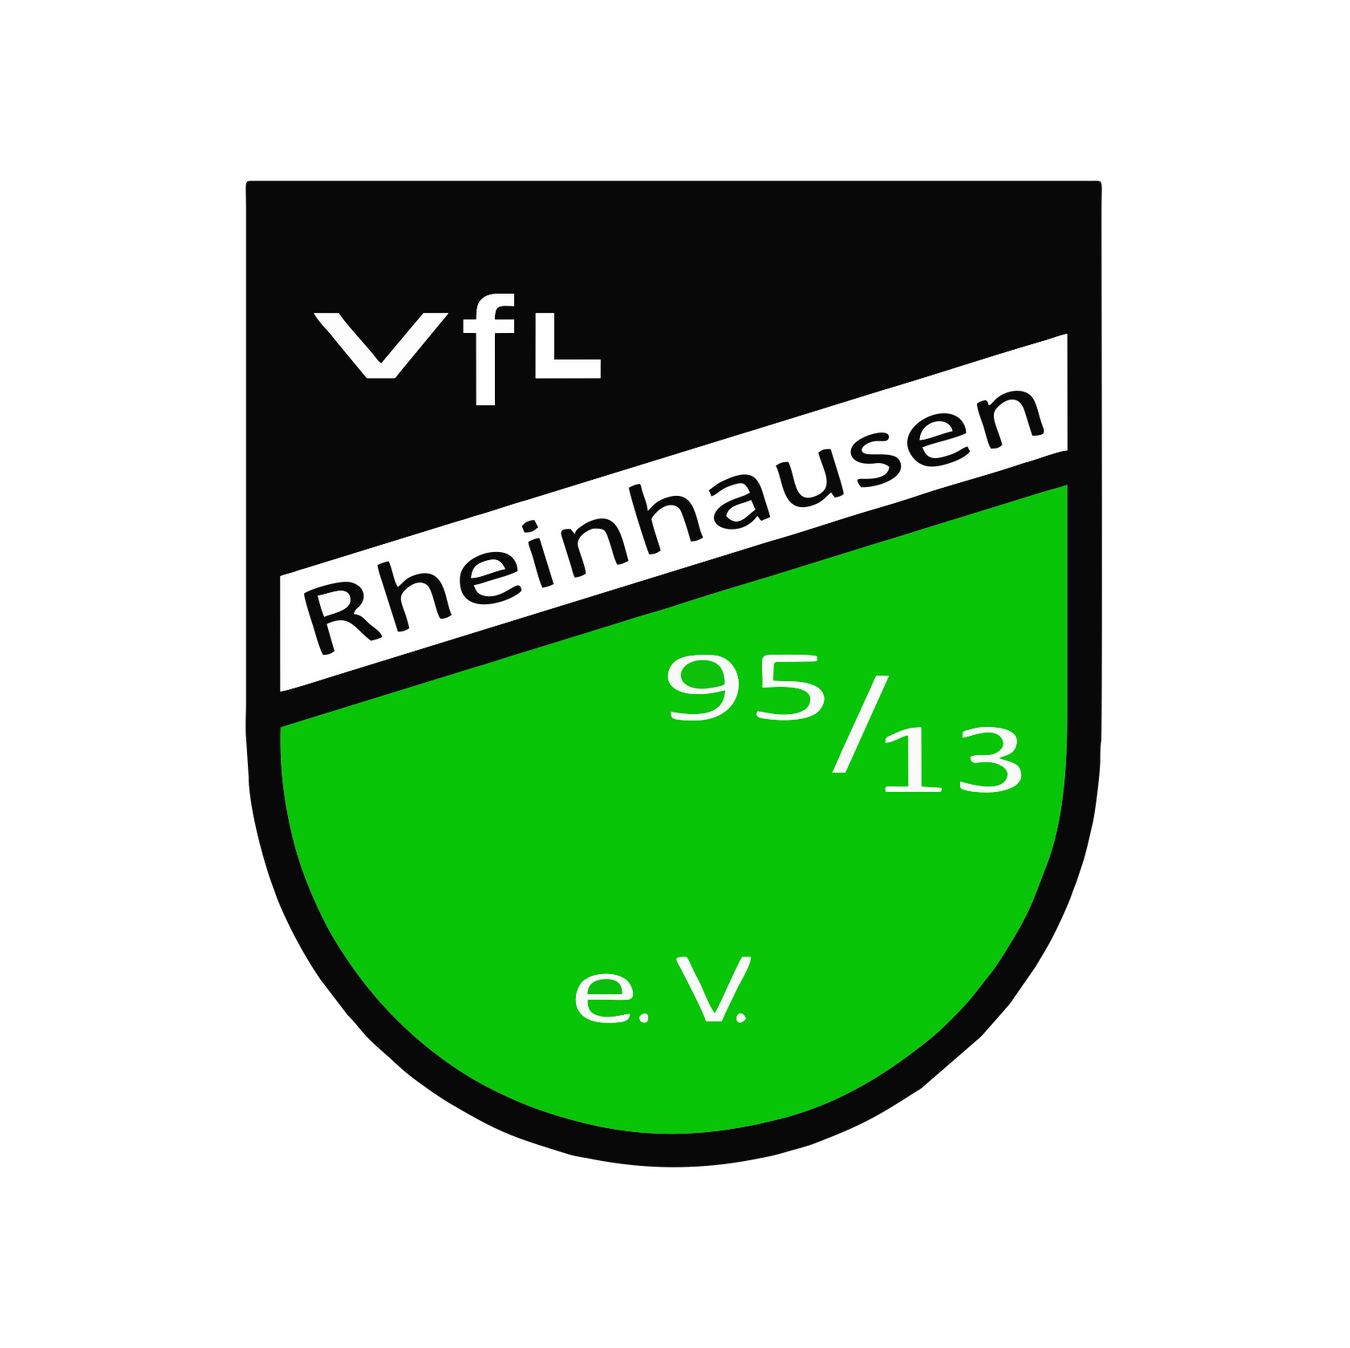 VfL Rheinhausen 95/13 e.V.